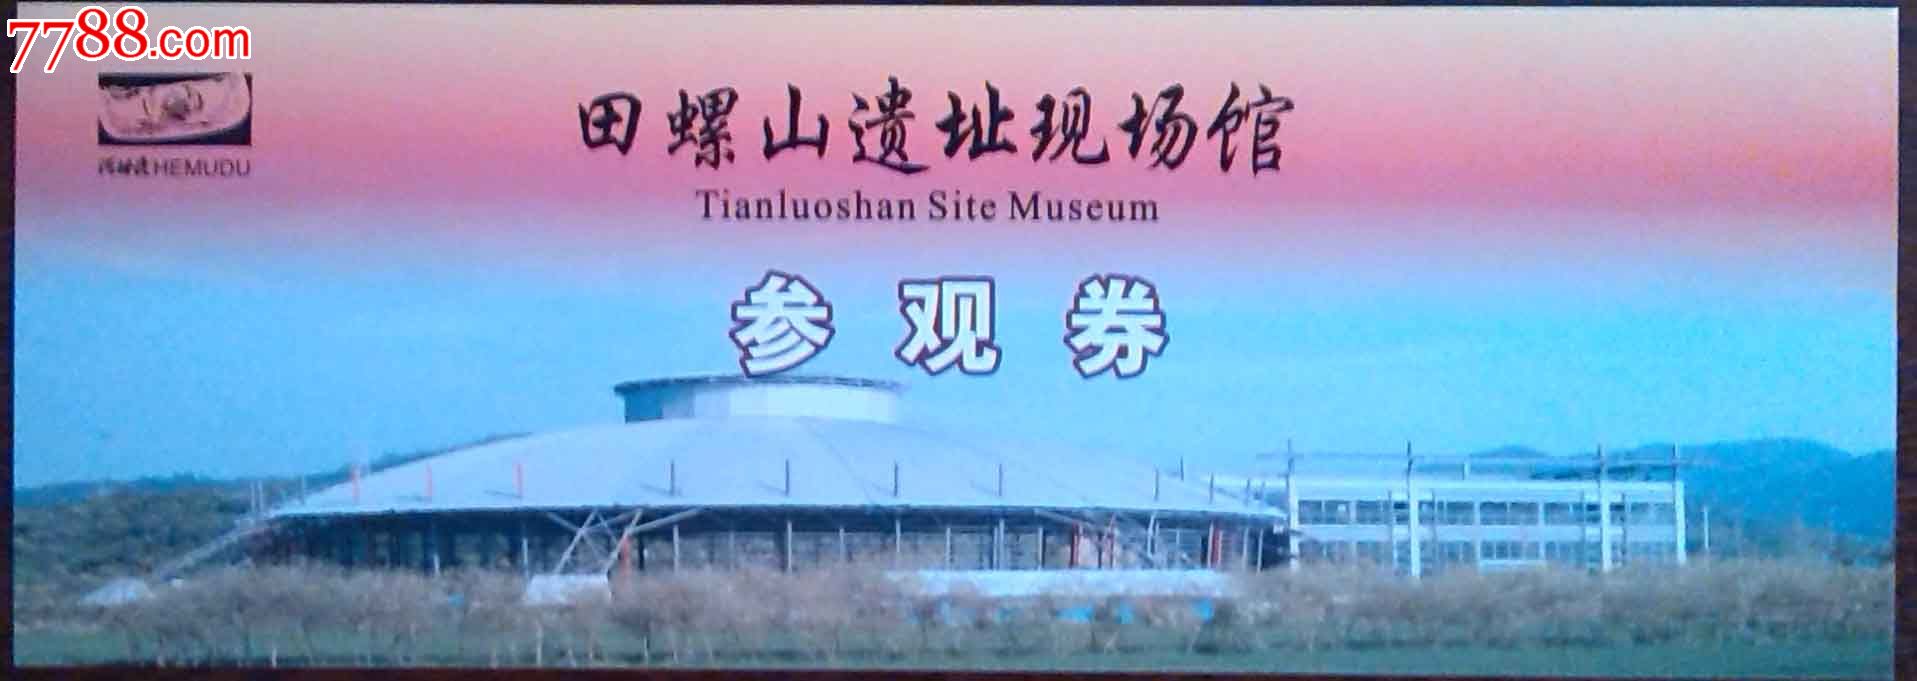 田螺山遗址博物馆